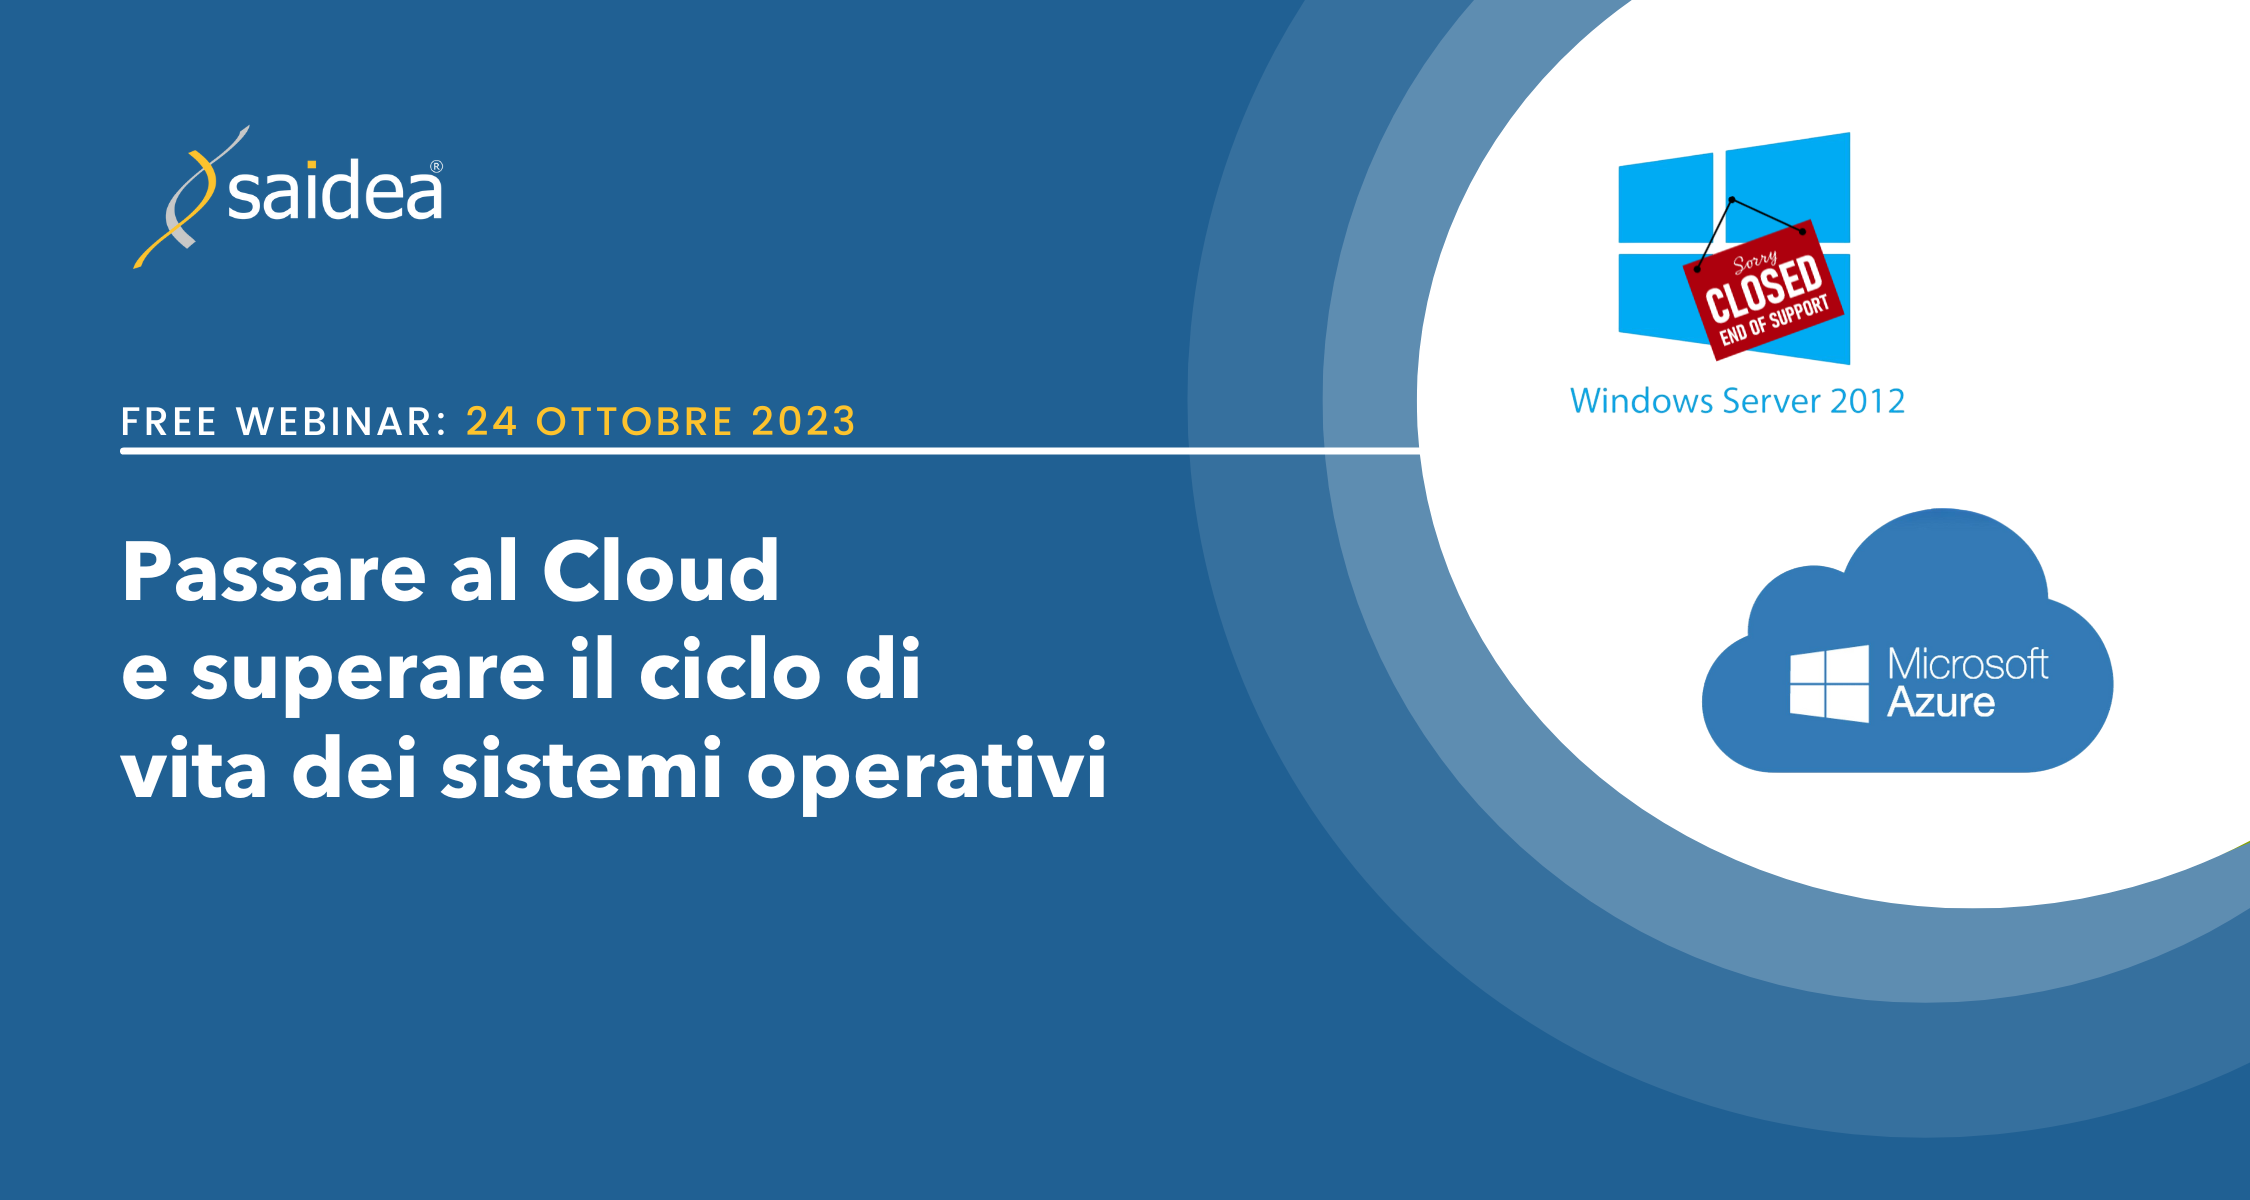 Grafica semplice su sfondo blu Saidea per presentare il titolo e le date del webinar, con i loghi di Microsoft Windows Server 2012 con un cartello "Sorry, closed. End of Support" e il logo di Microsoft Azure in una nuvola azzurra.